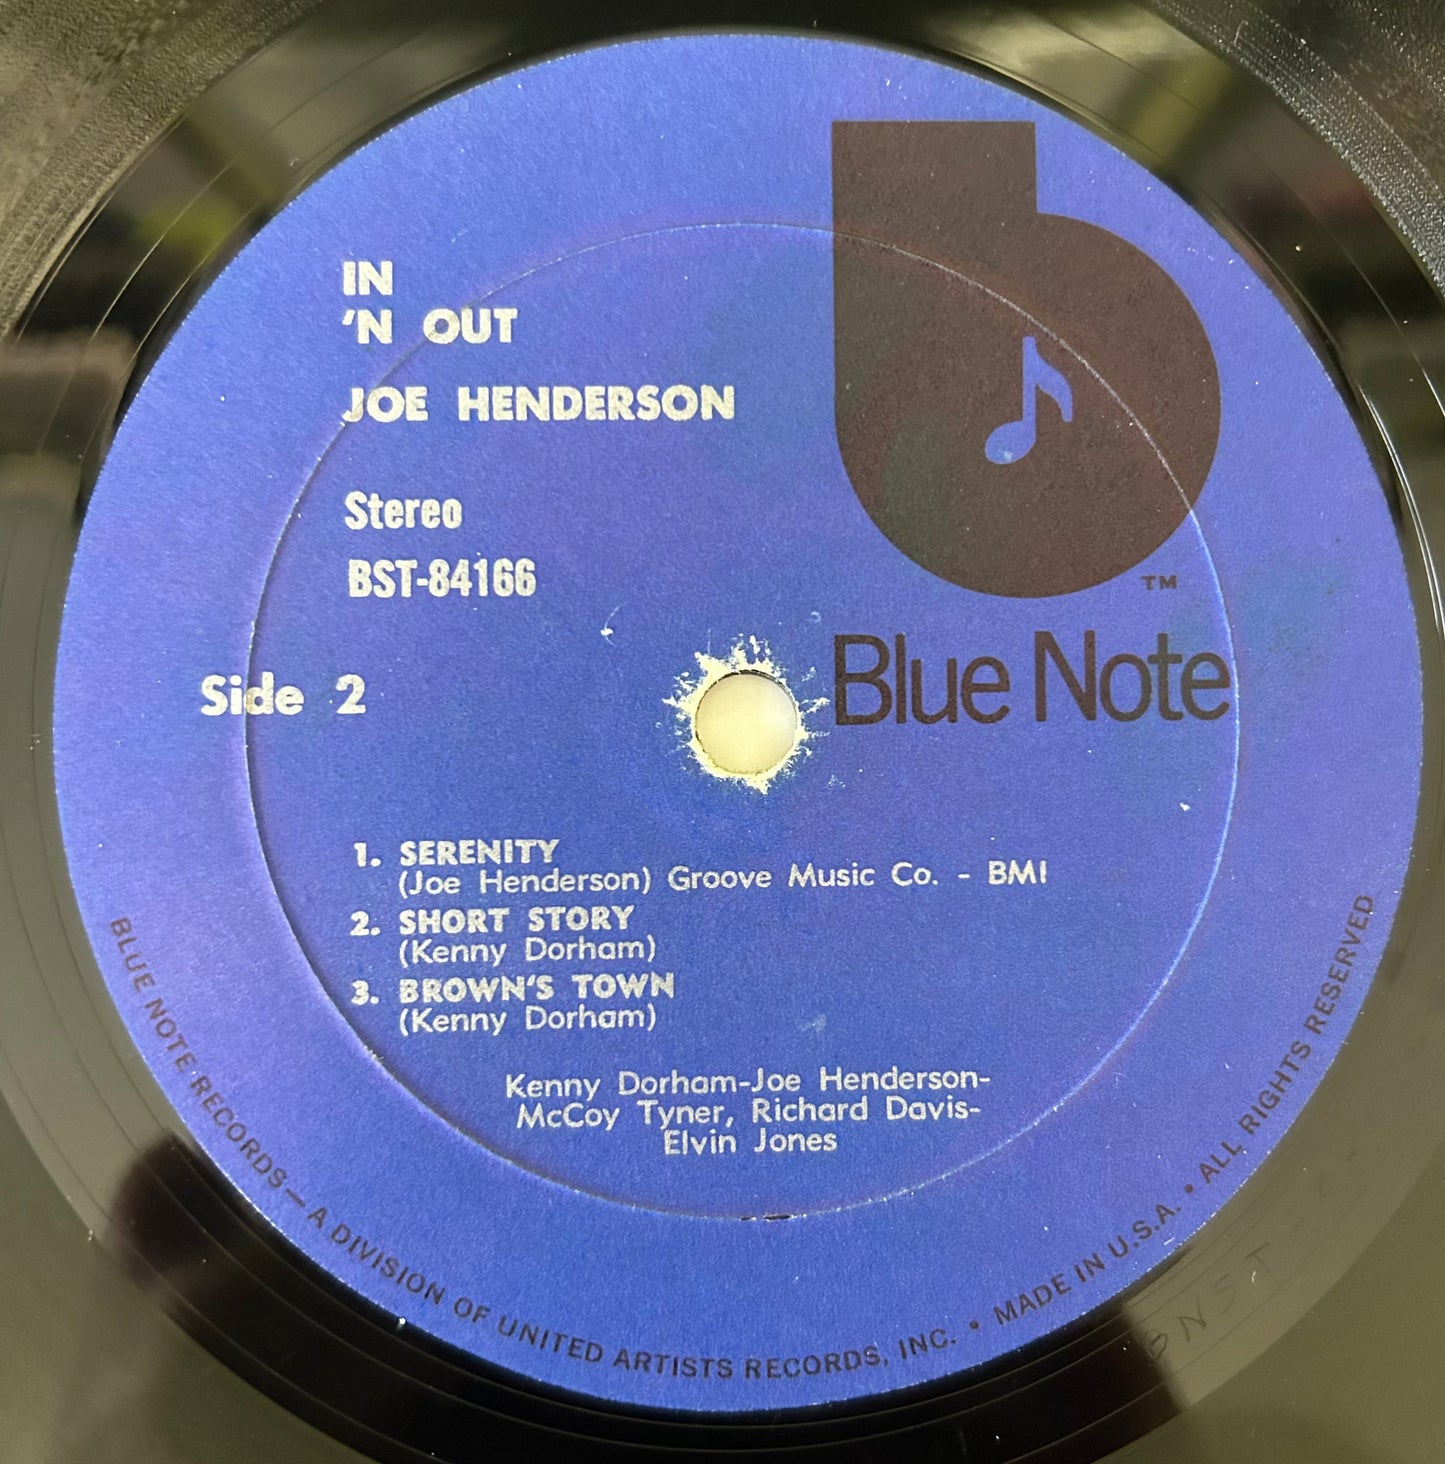 Joe Henderson - In 'n Out 1973 Blue Note Black "b" Press